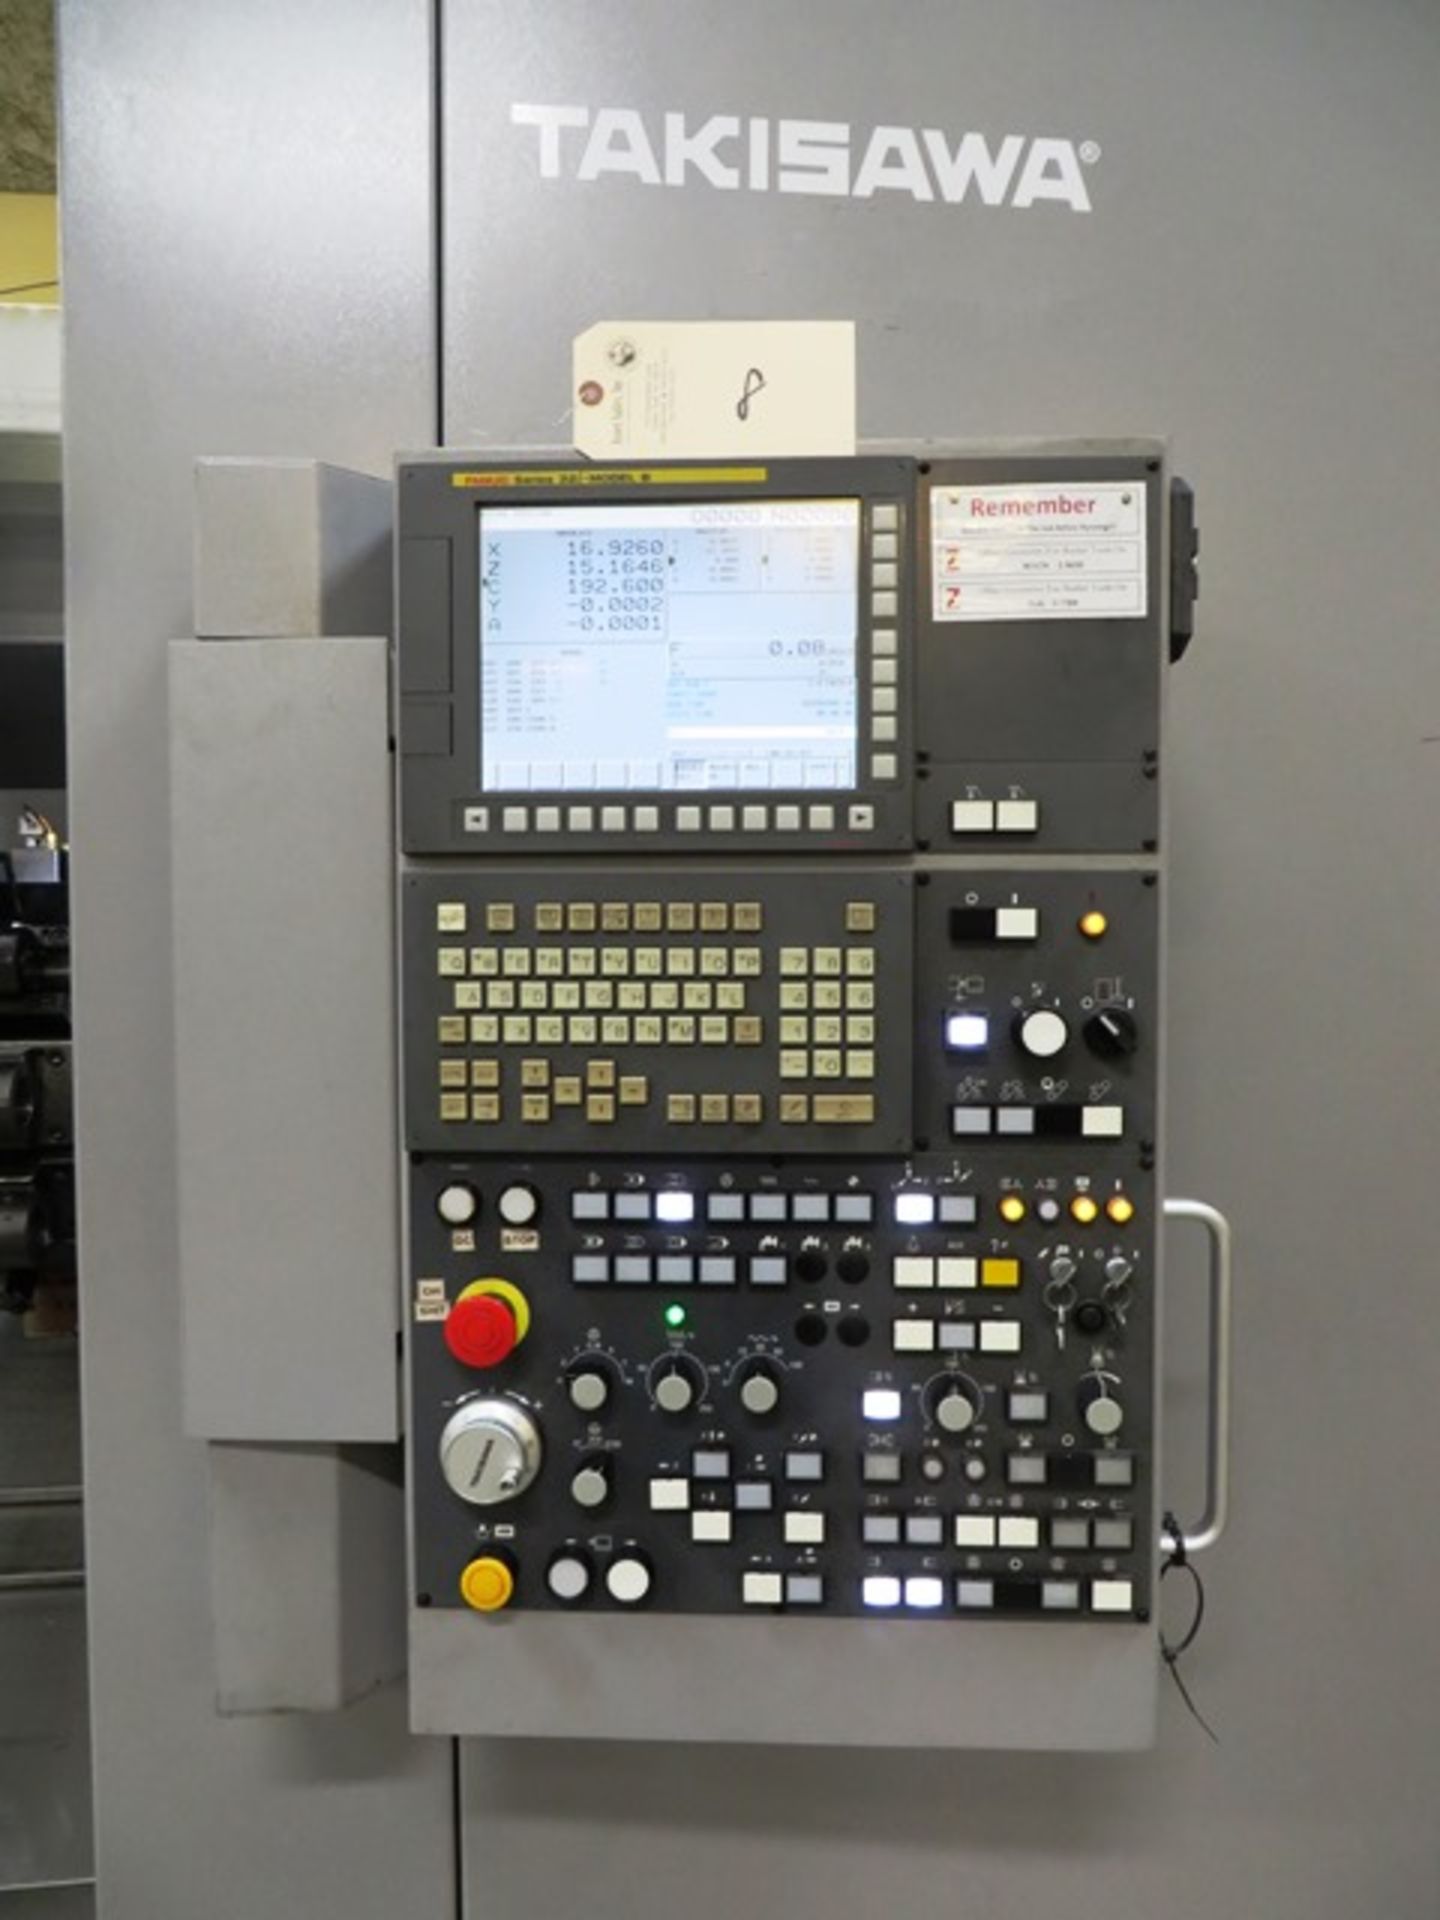 Takisawa TS-4000 YS CNC Turning Center - Image 2 of 8